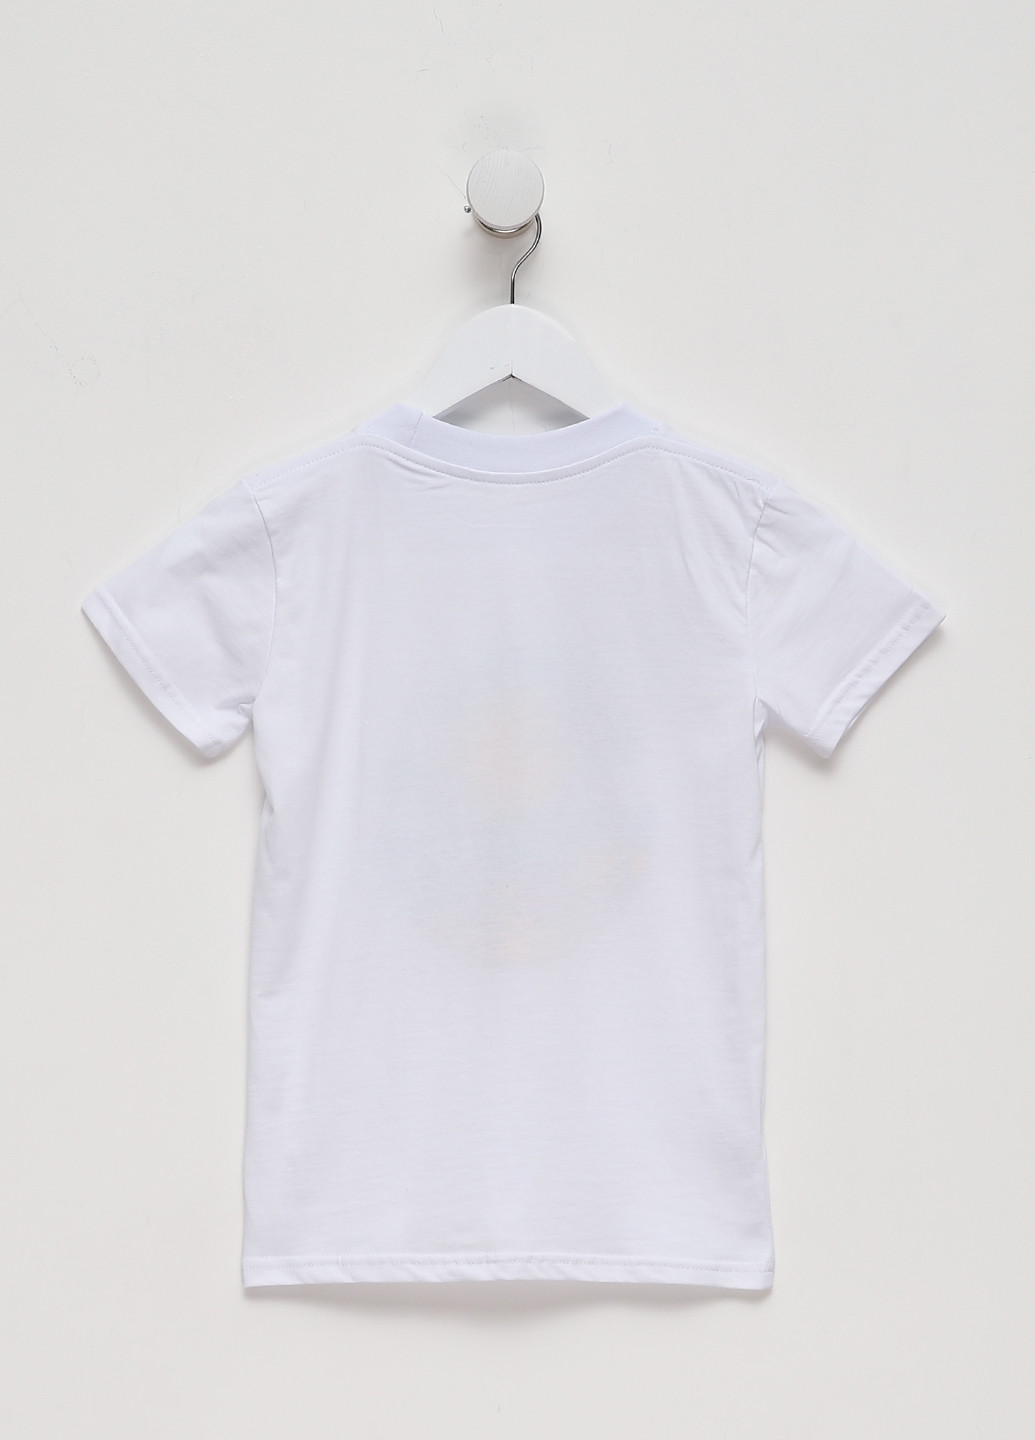 Біла демісезонна футболка для хлопців д403/1-17-н біла Malta